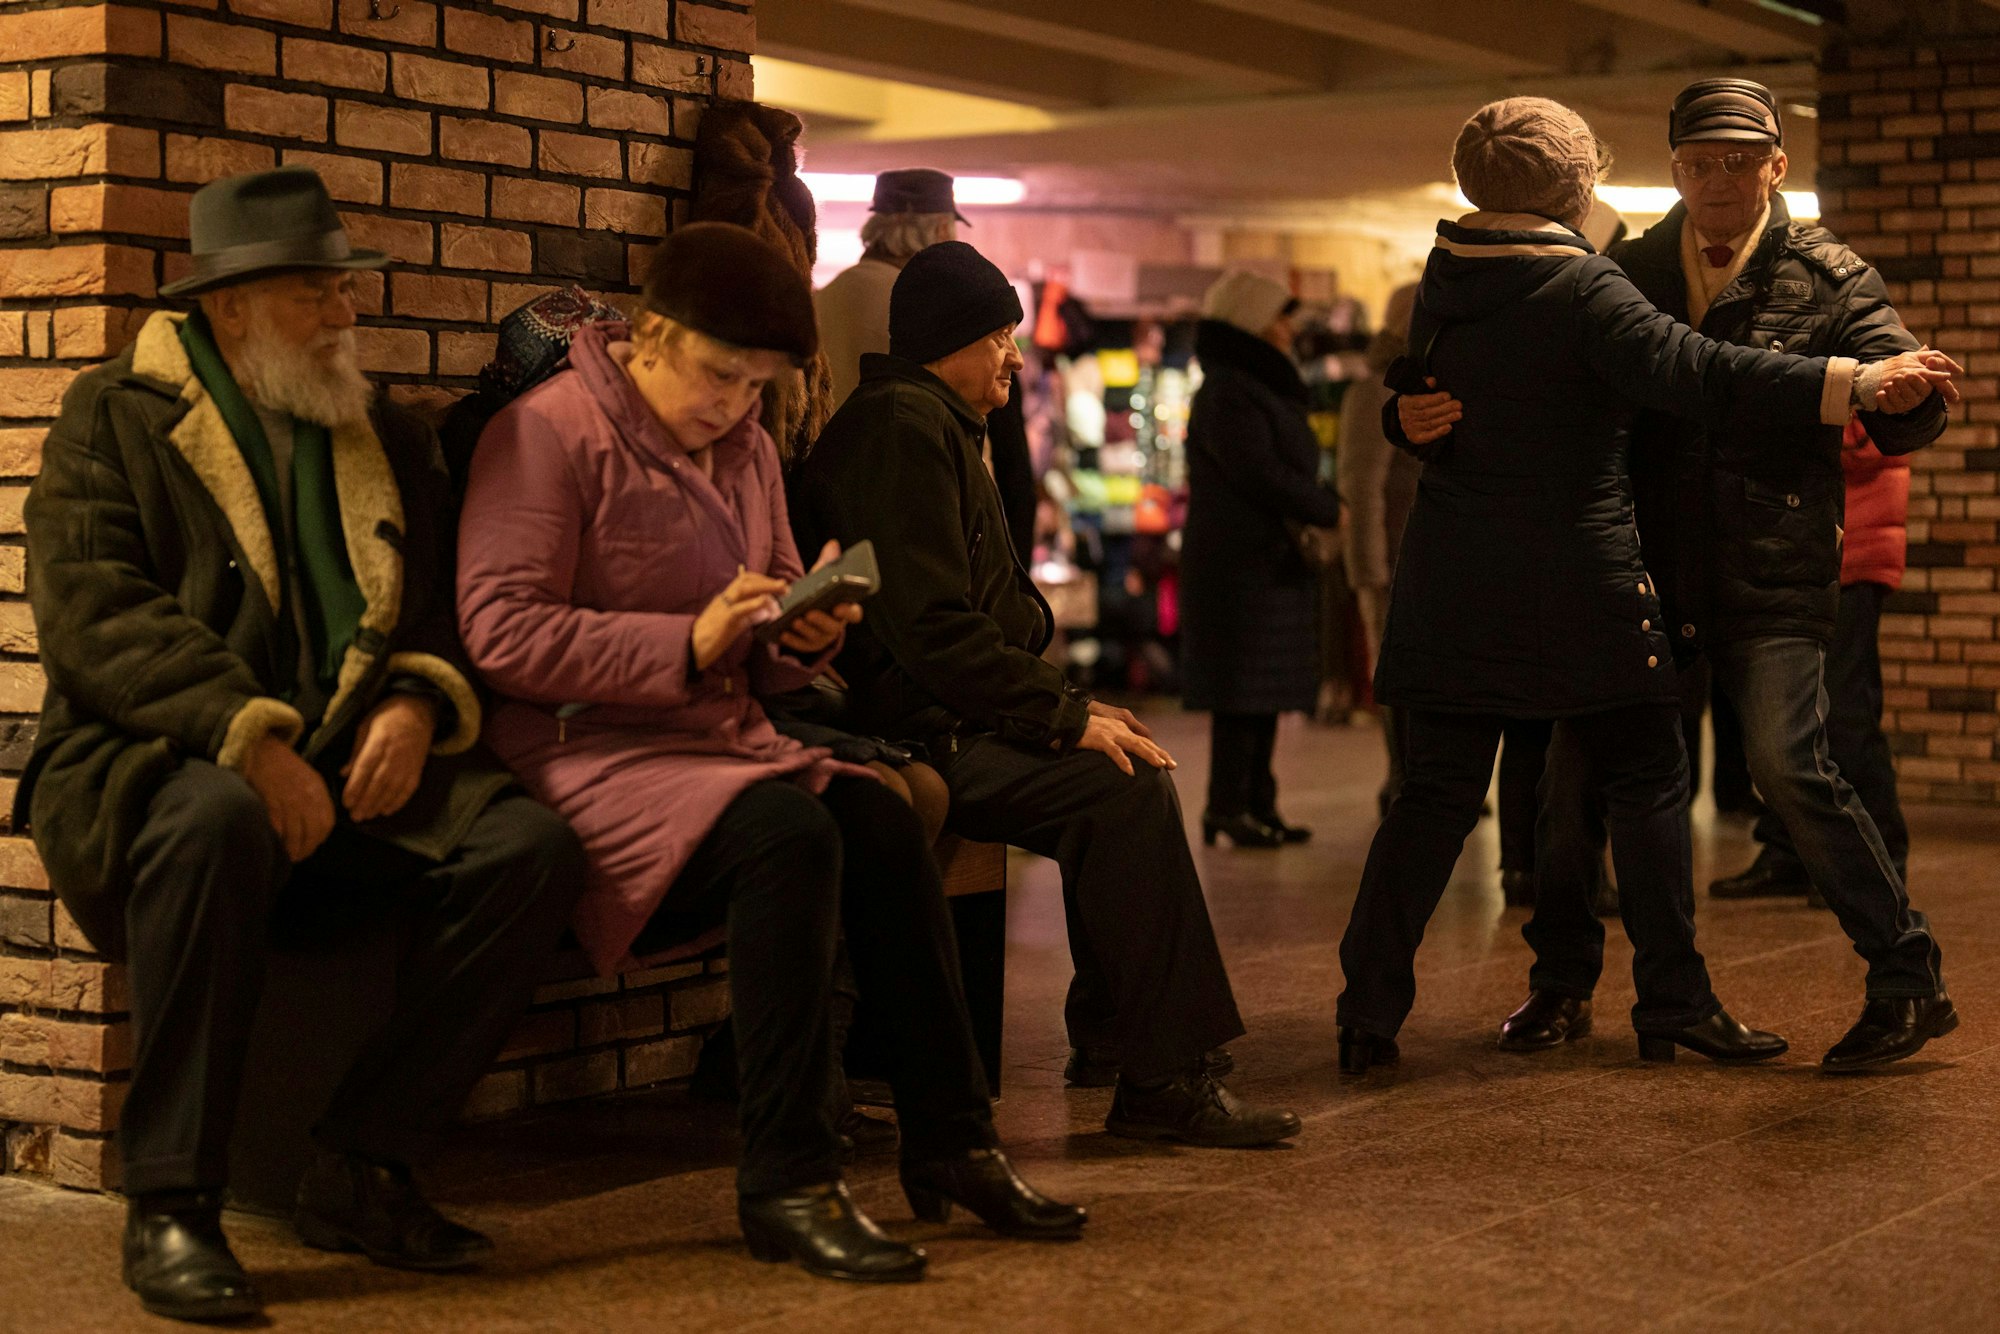 Ältere Paare tanzen am Wochenende in der U-Bahn-Station Teatralna in Kiew. Dutzende von Senioren tanzten bei einer Tanz-Veranstaltung mehr als zwei Stunden in der U-Bahn-Station. Die Veranstaltung sei Jahrzehnte alt und wurde nur kurz durch den russischen Einmarsch in die Ukraine unterbrochen, wie die Teilnehmer berichten.